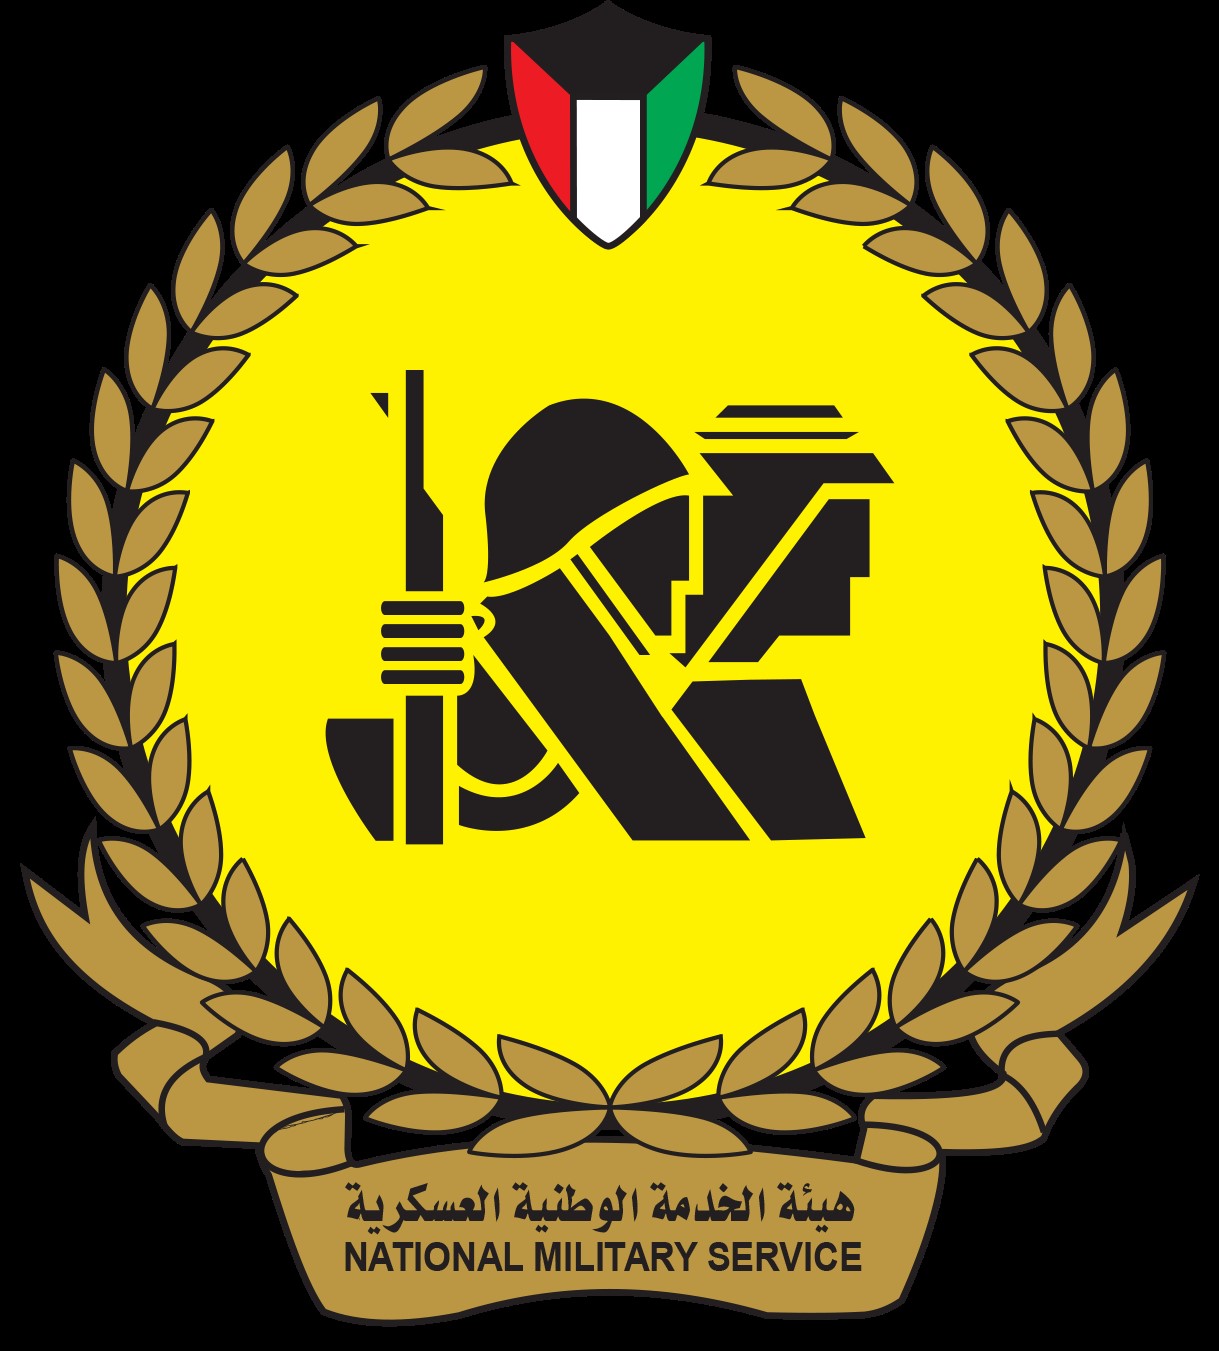 شعار هيئة الخدمة الوطنية العسكرية